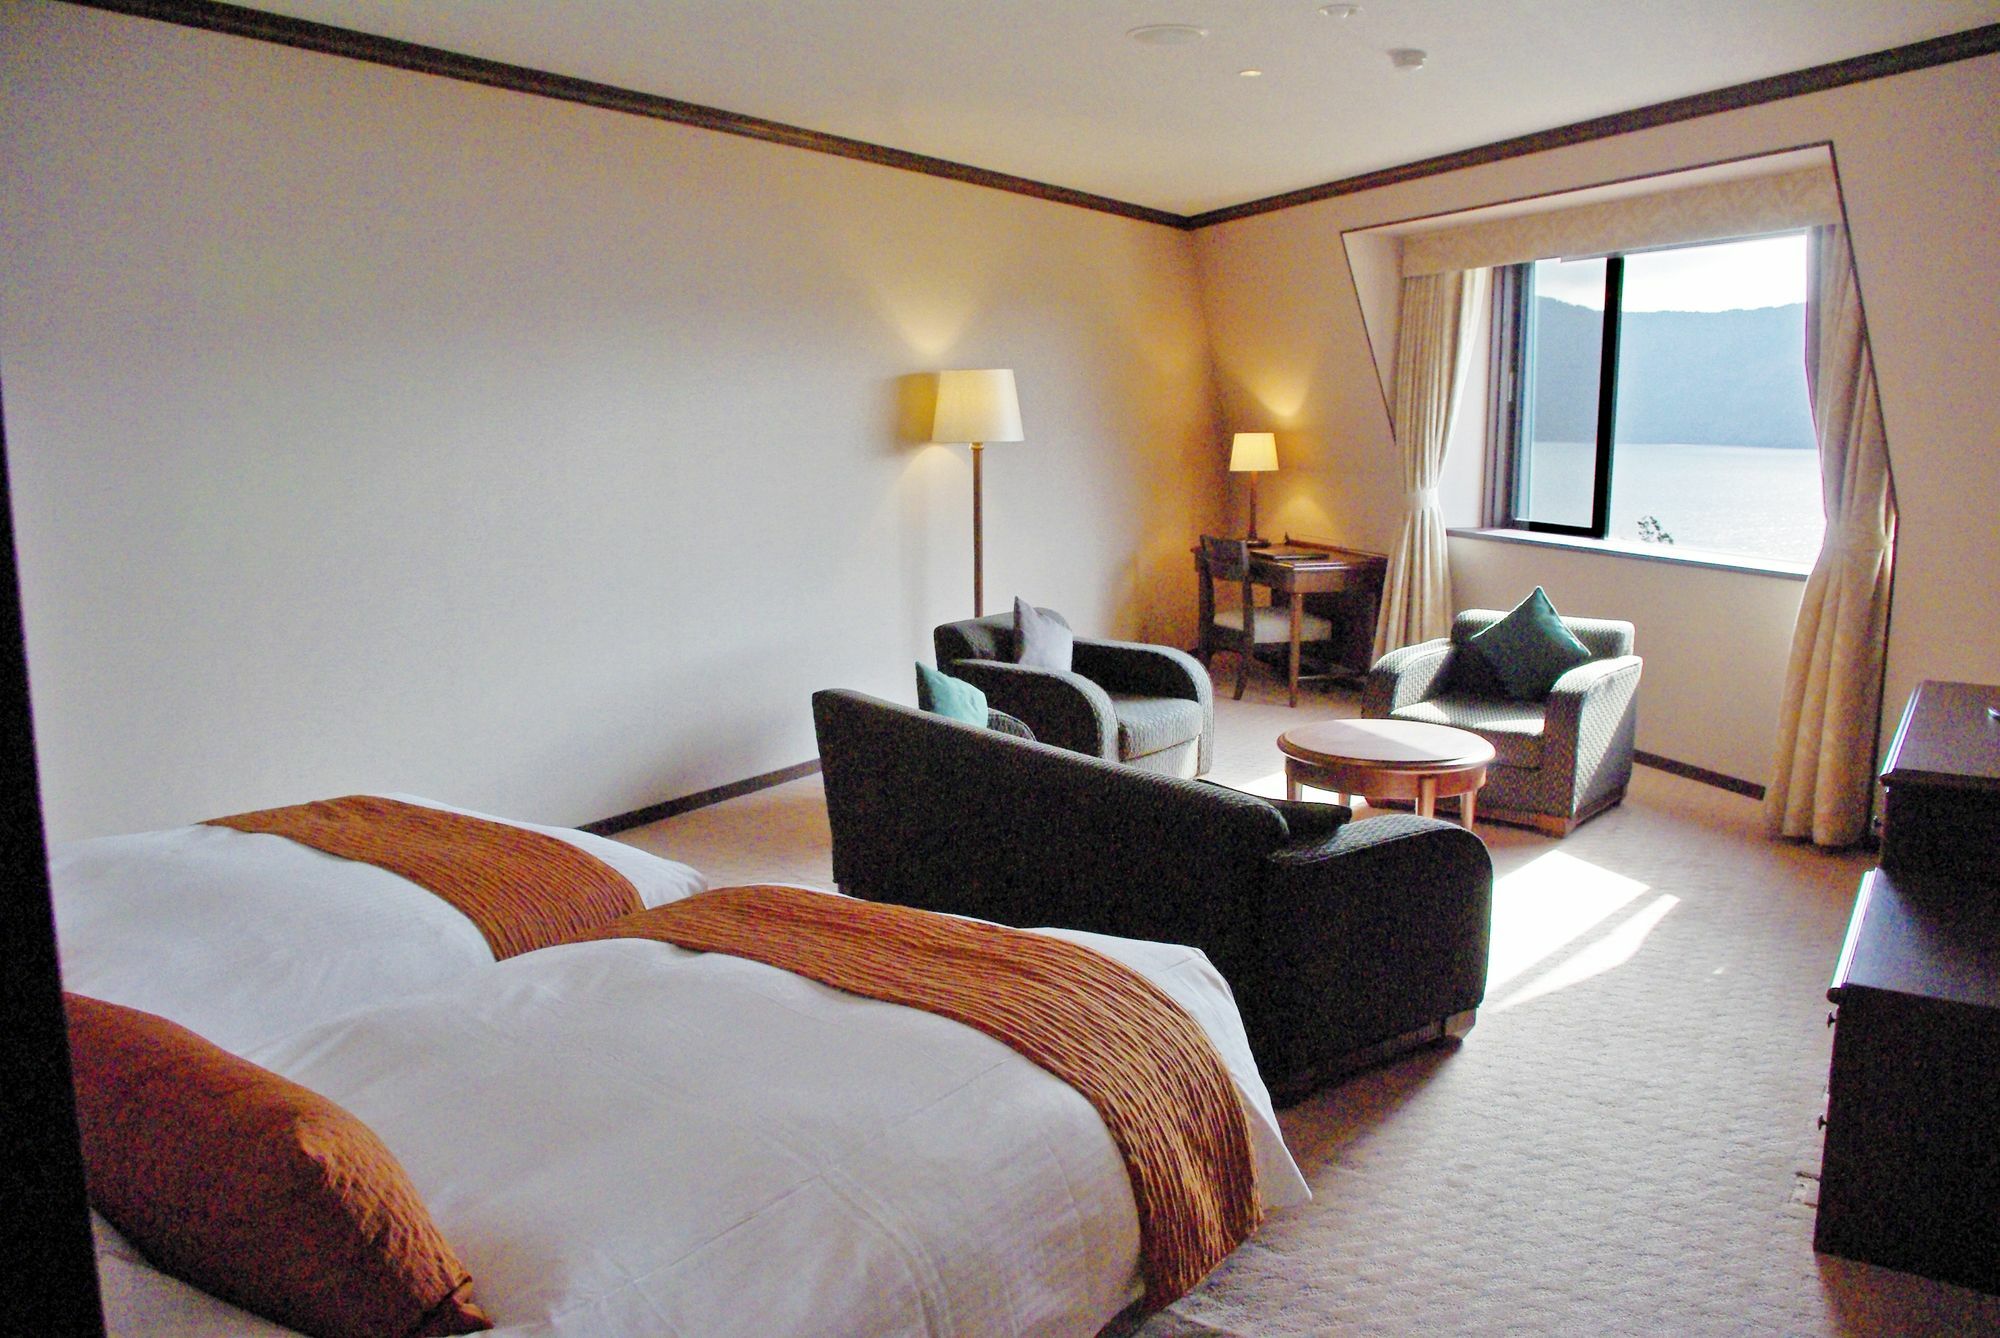 Odakyu Hotel De Yama Hakone Zewnętrze zdjęcie